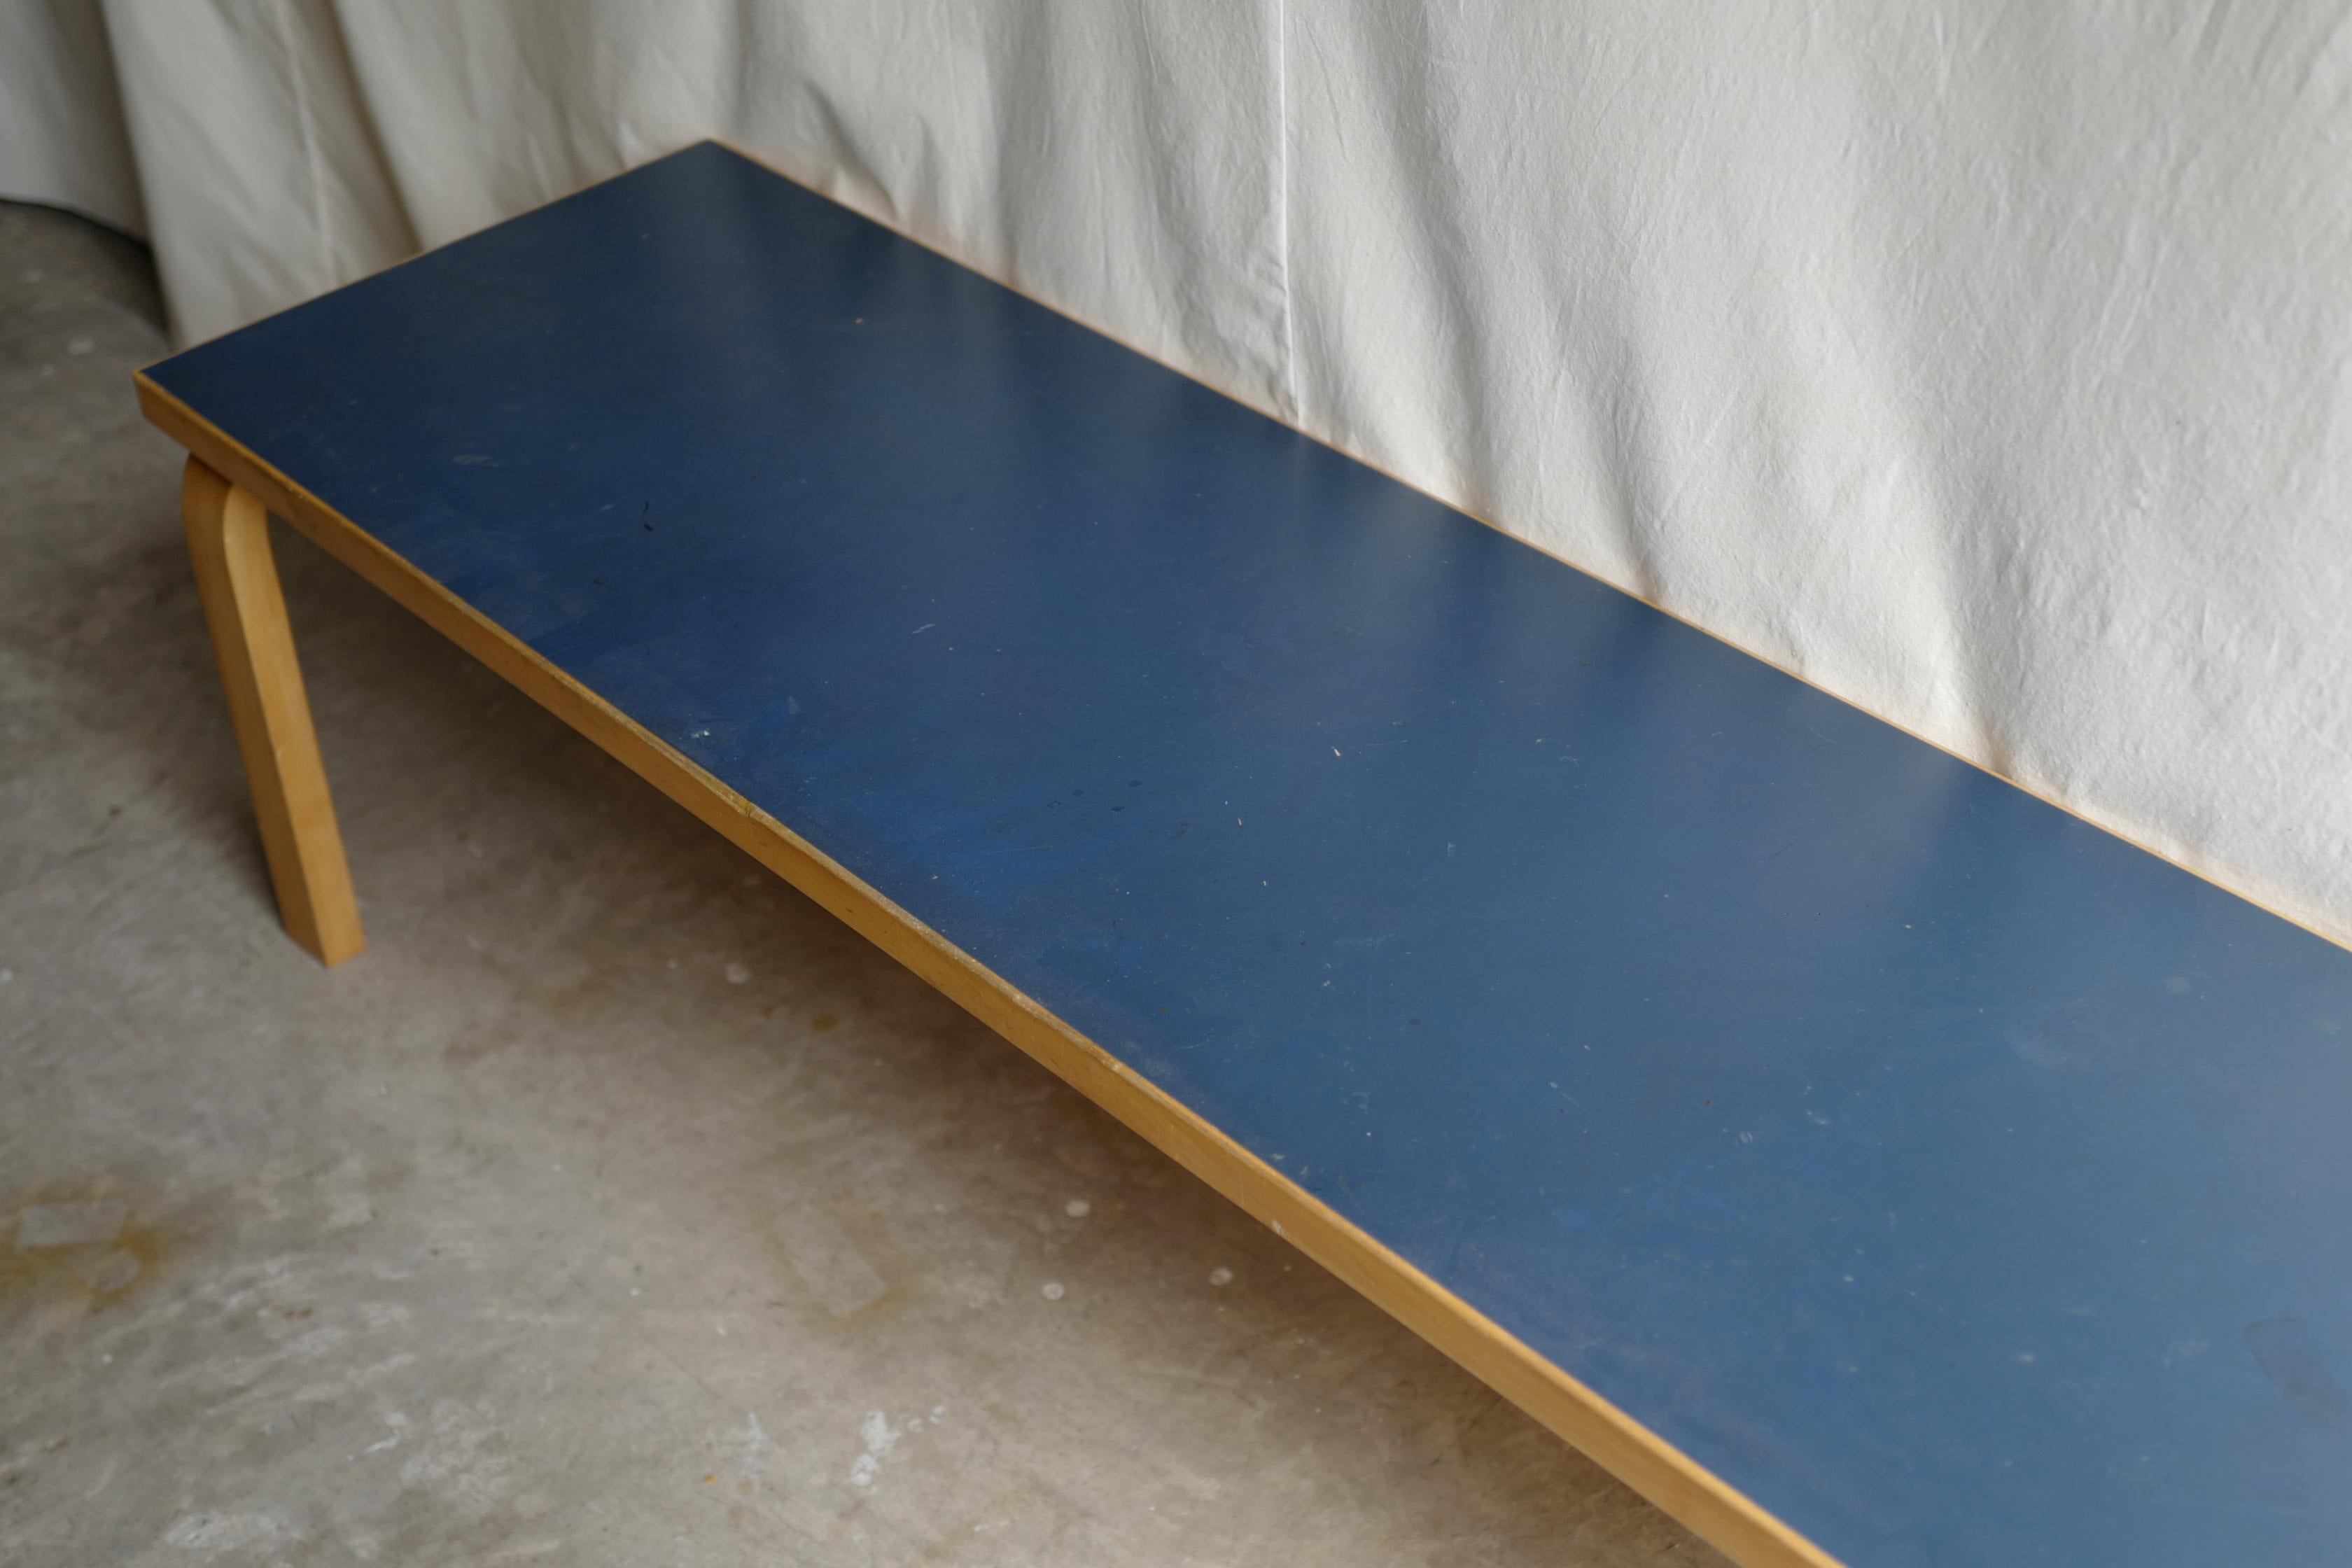 1960's alvar aalto design bench 
It is blue linoleum top.